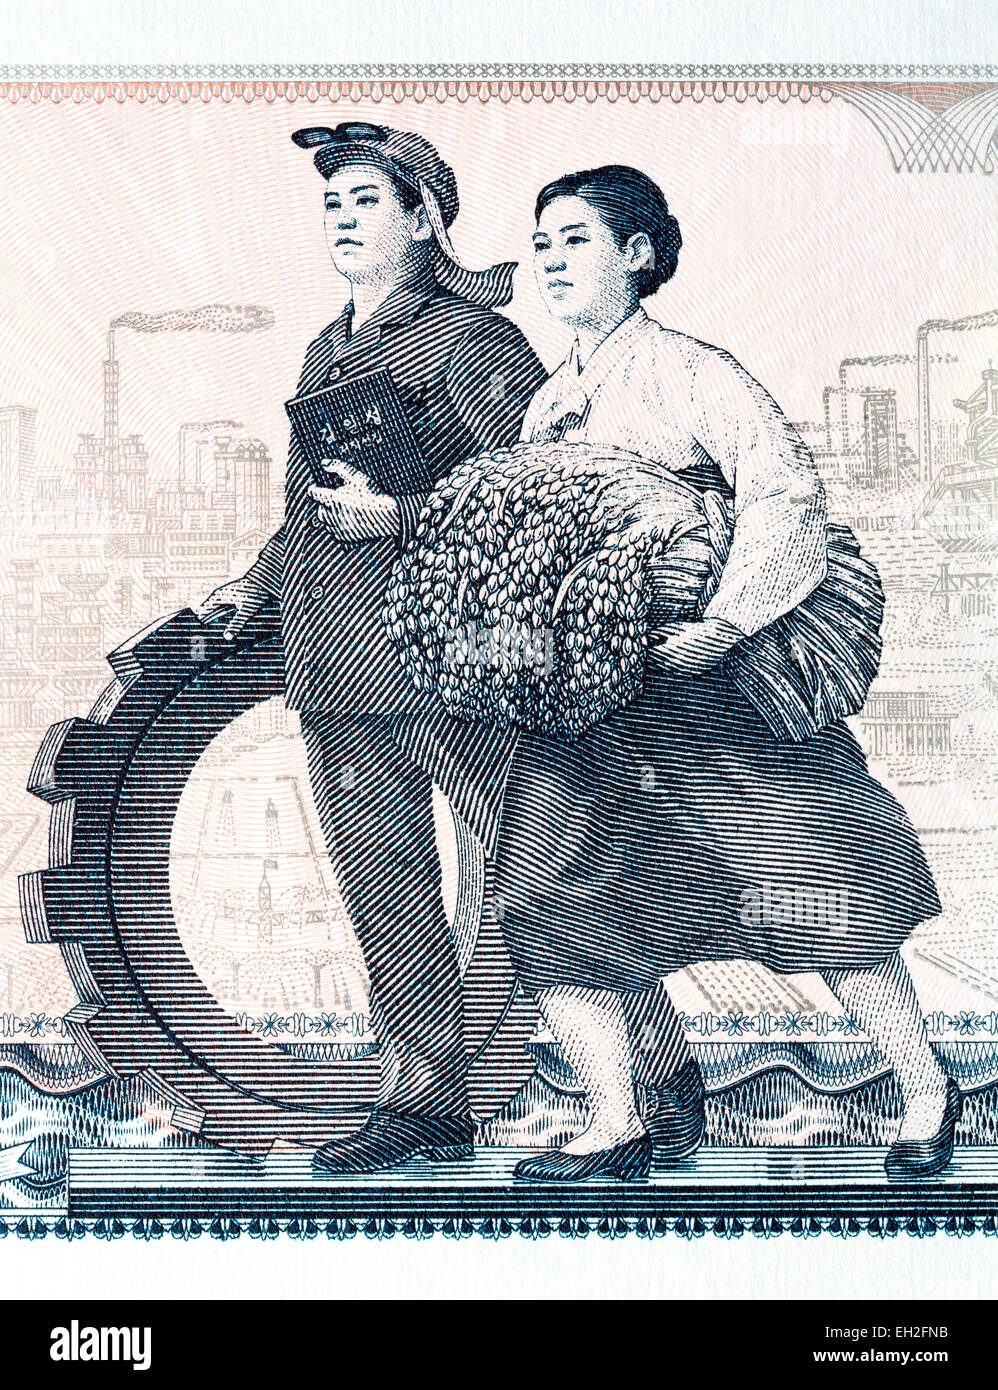 Lavoratori giovane che simboleggiano l'industria e agricoltura da 5 ha vinto la banconota, Corea del Nord, 1978 Foto Stock